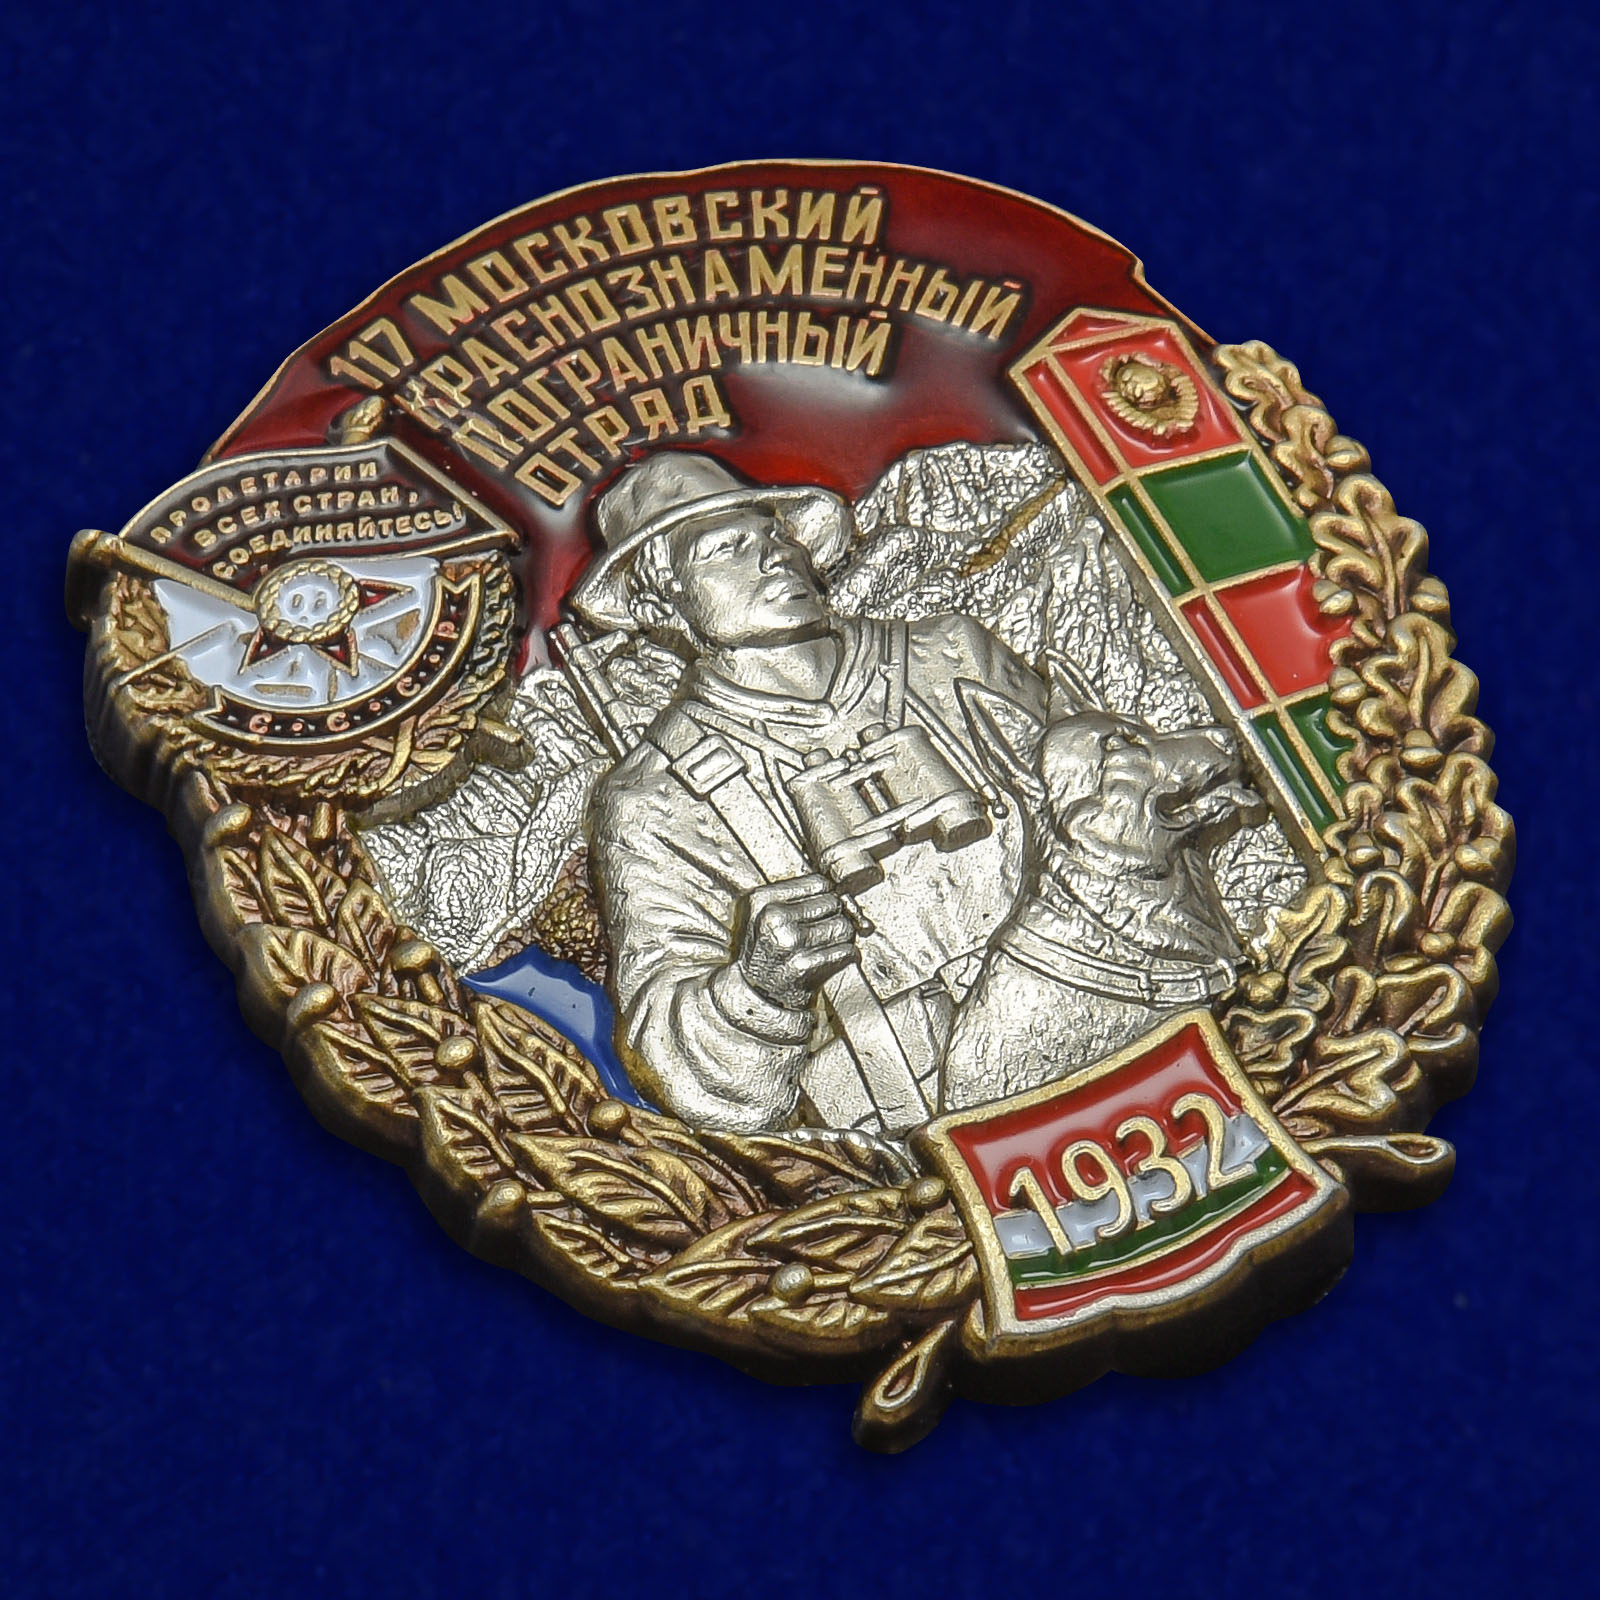 Знак "117 Московский Краснознамённый Пограничный отряд" 